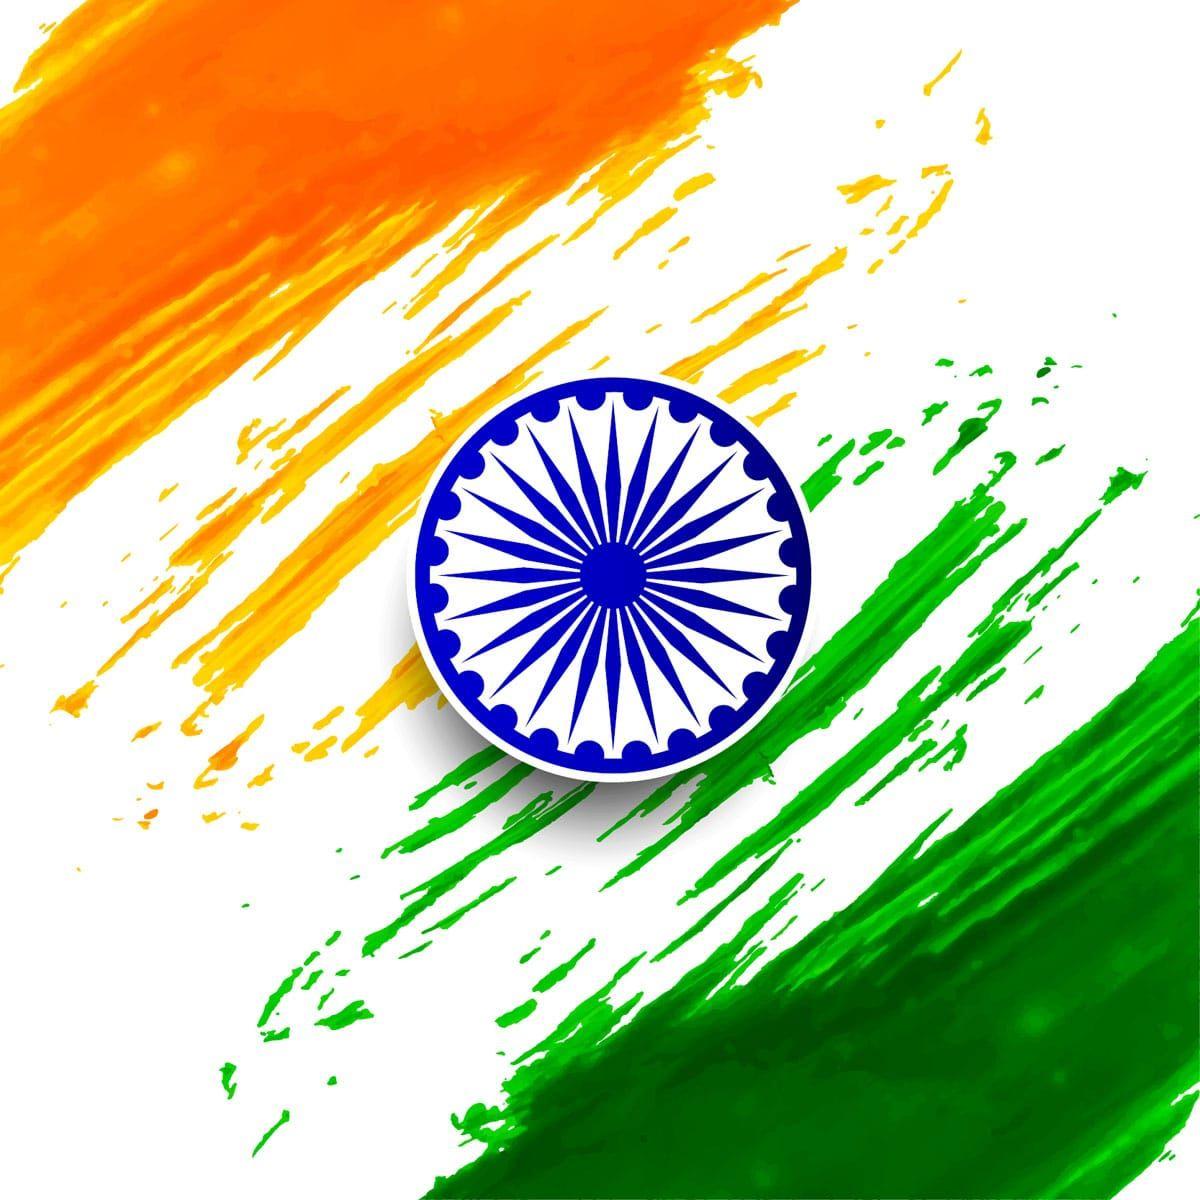 Indian Flag HD Image. Indian Flag. Indian flag, HD